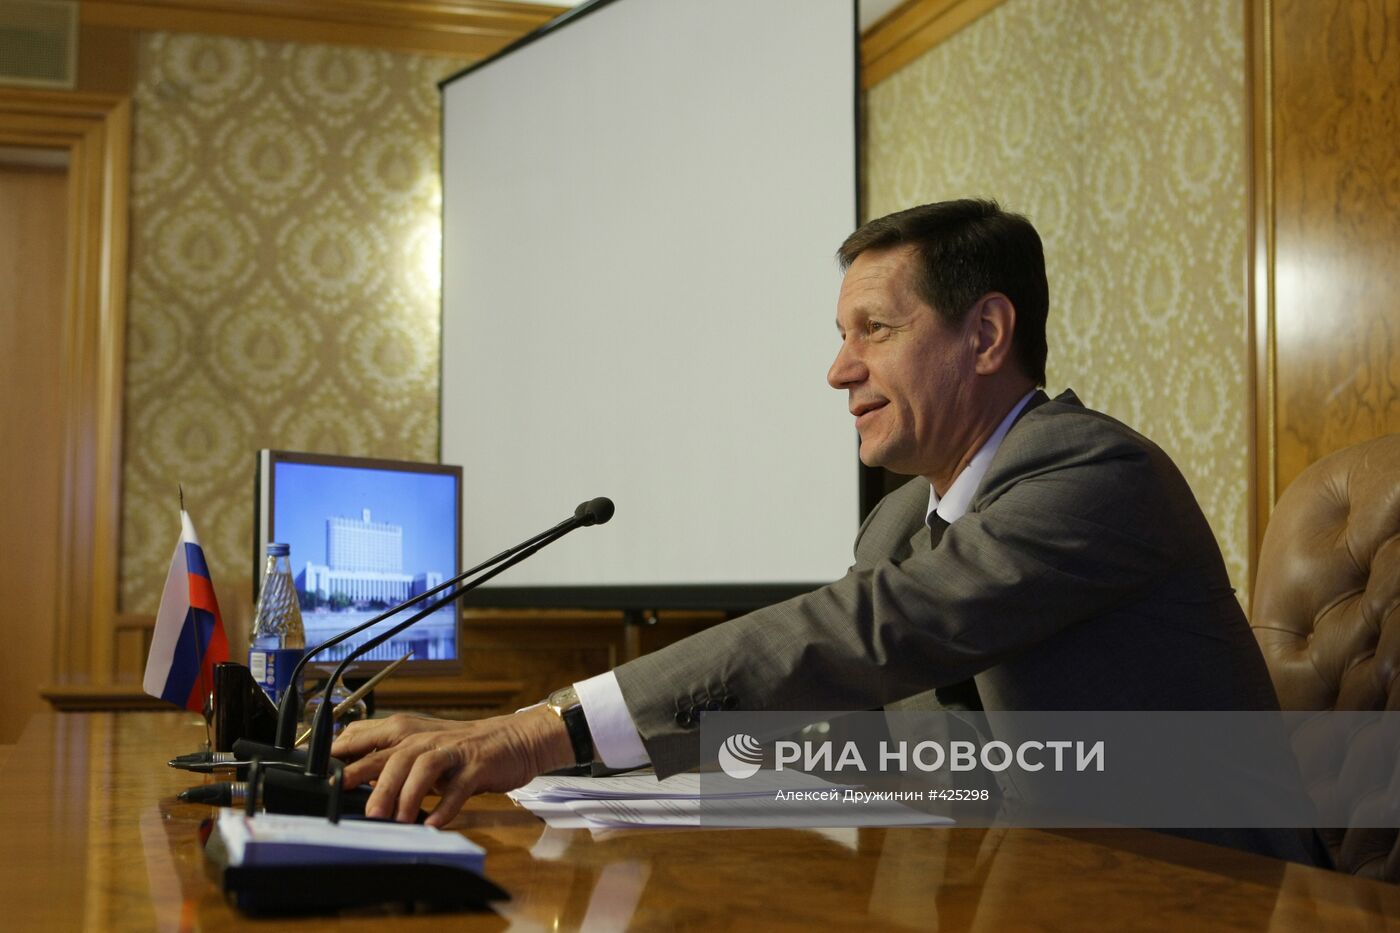 Вице-премьер РФ А.Жуков провел заседание в Доме правительства РФ